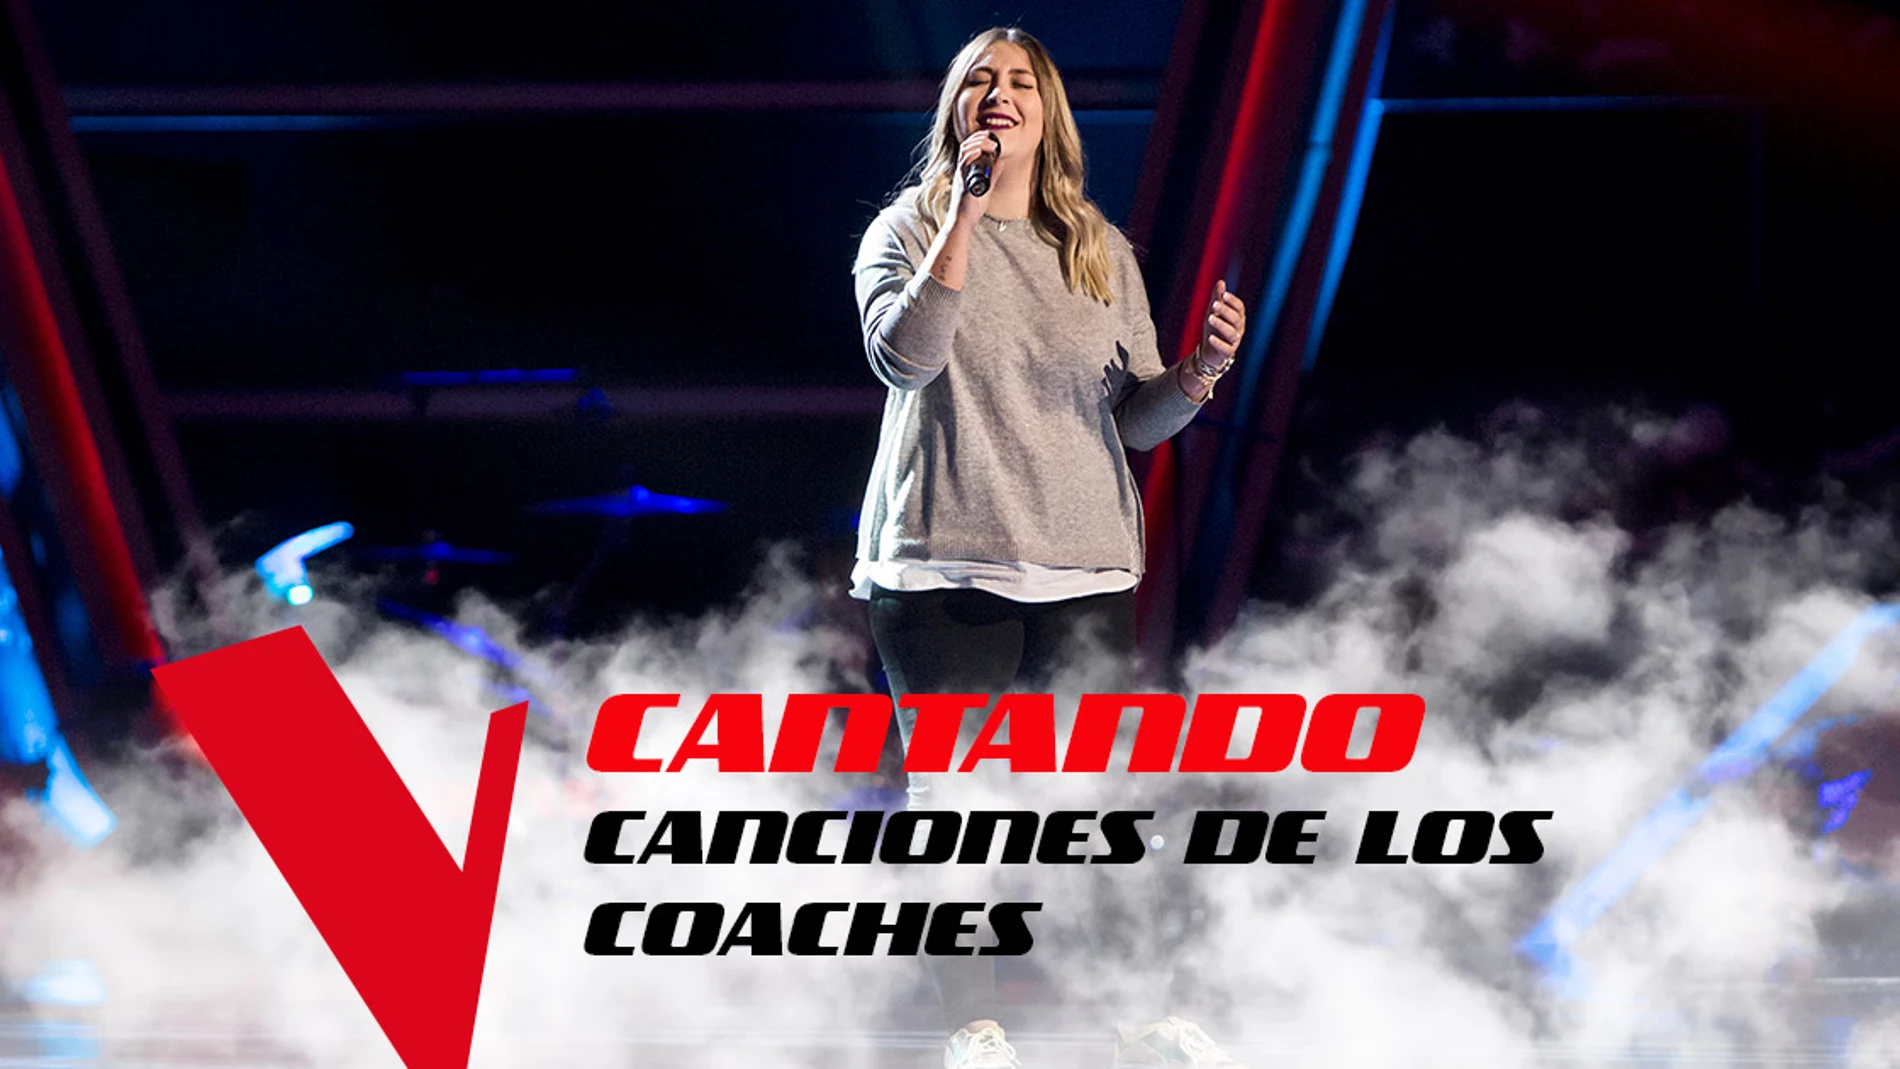 Los talents que han cantado canciones de los coaches de 'La Voz'